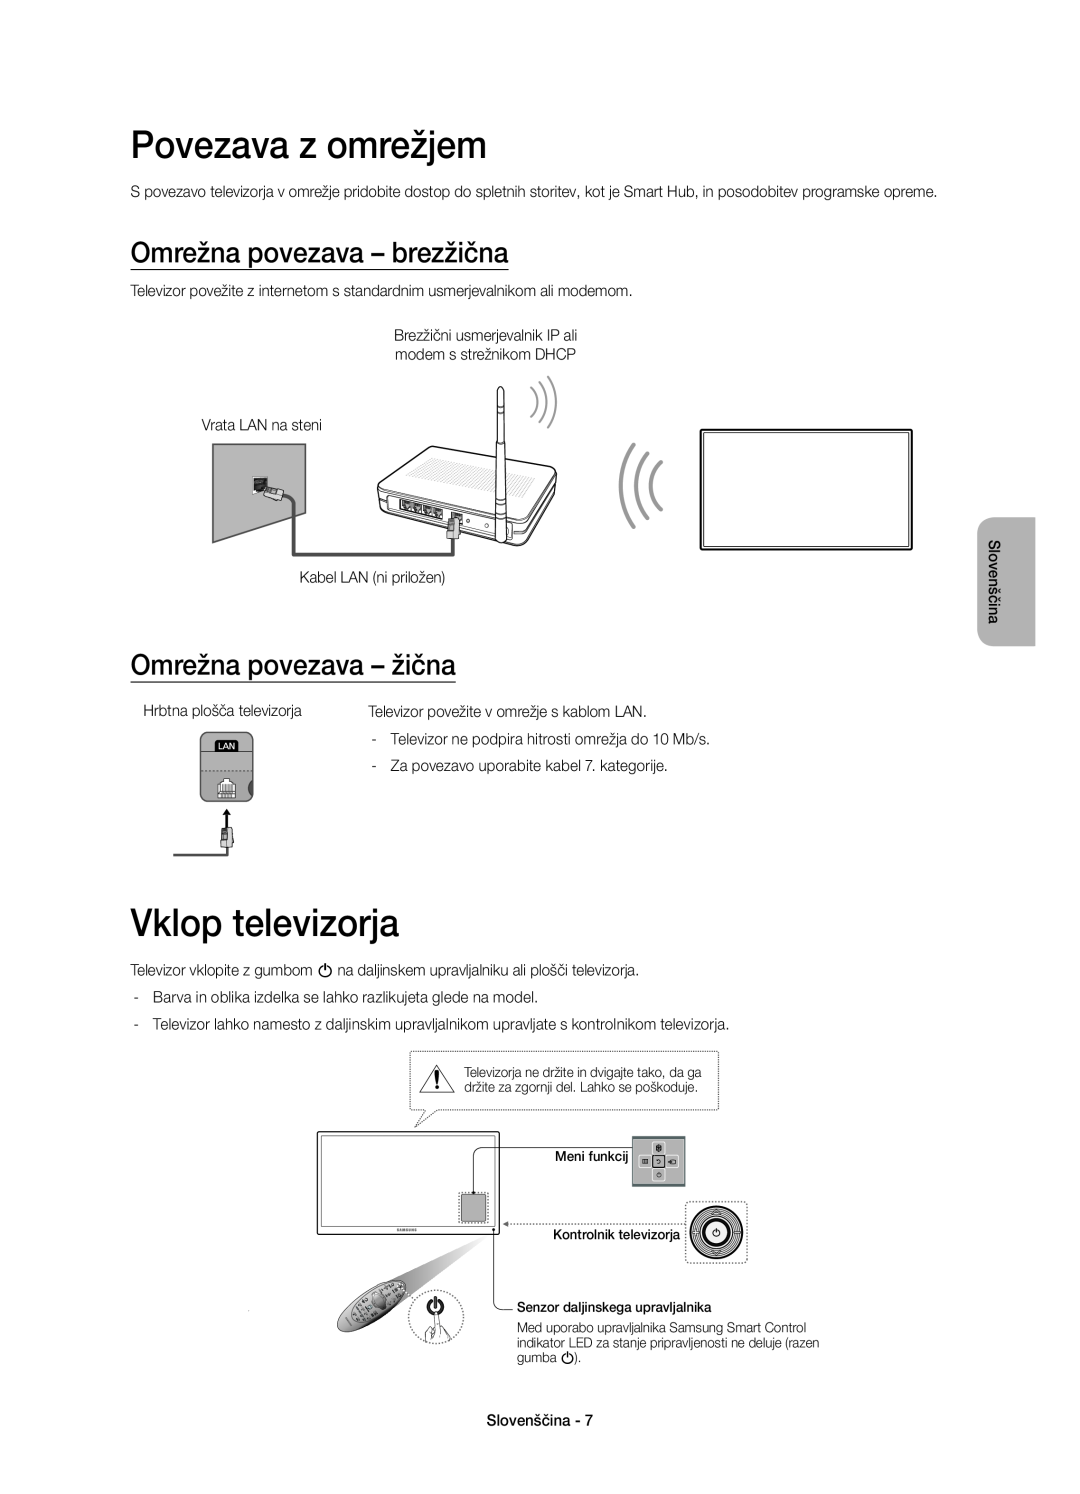 Samsung UE55H6410SSXZF Povezava z omrežjem, Vklop televizorja, Omrežna povezava - brezžična, Omrežna povezava - žična 